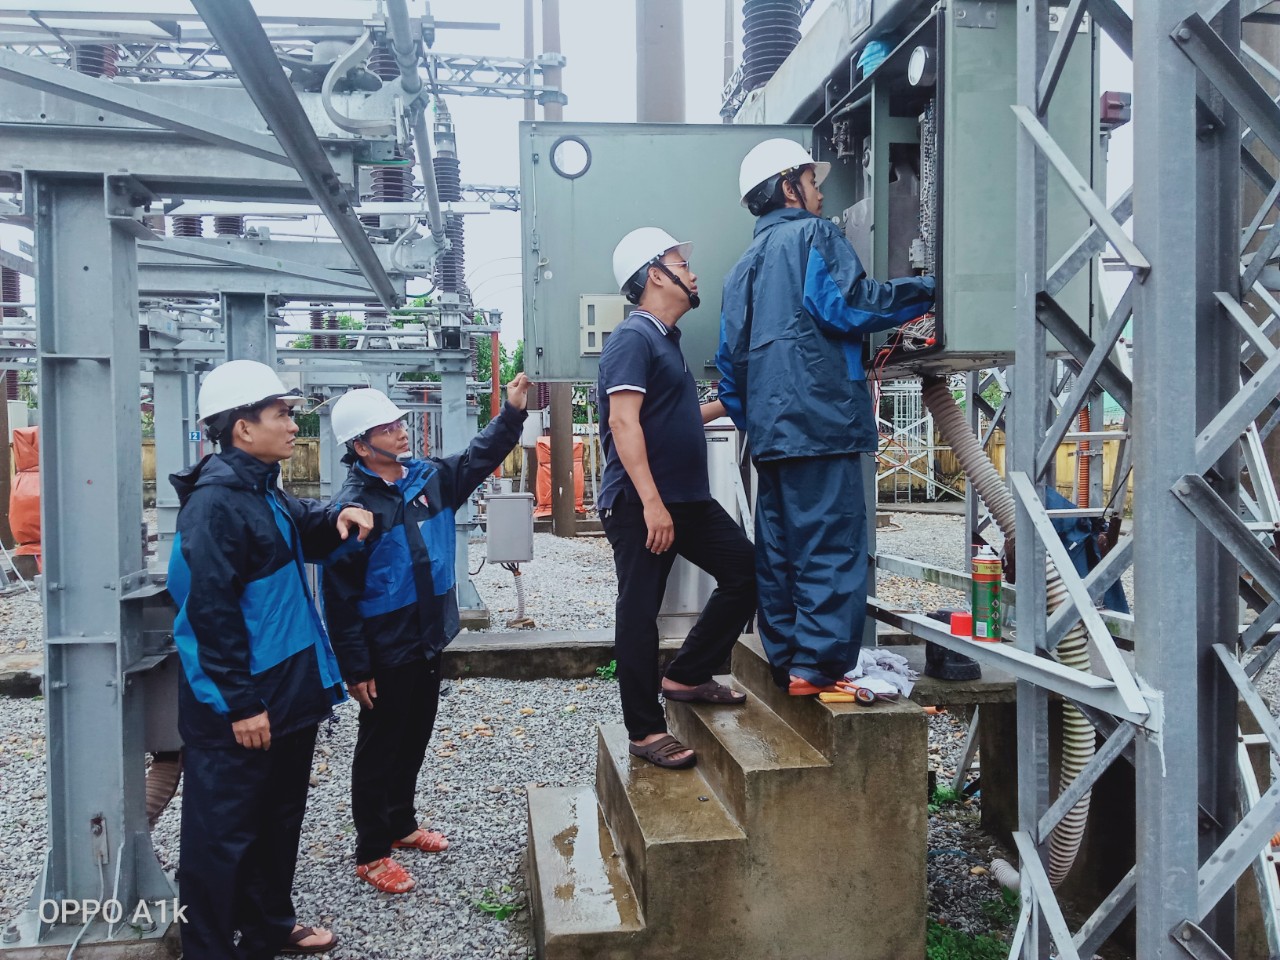 Quảng Nam: Sau bão số 4, ngành điện đang chạy nước rút để khắc phục lưới điện - Ảnh 2.